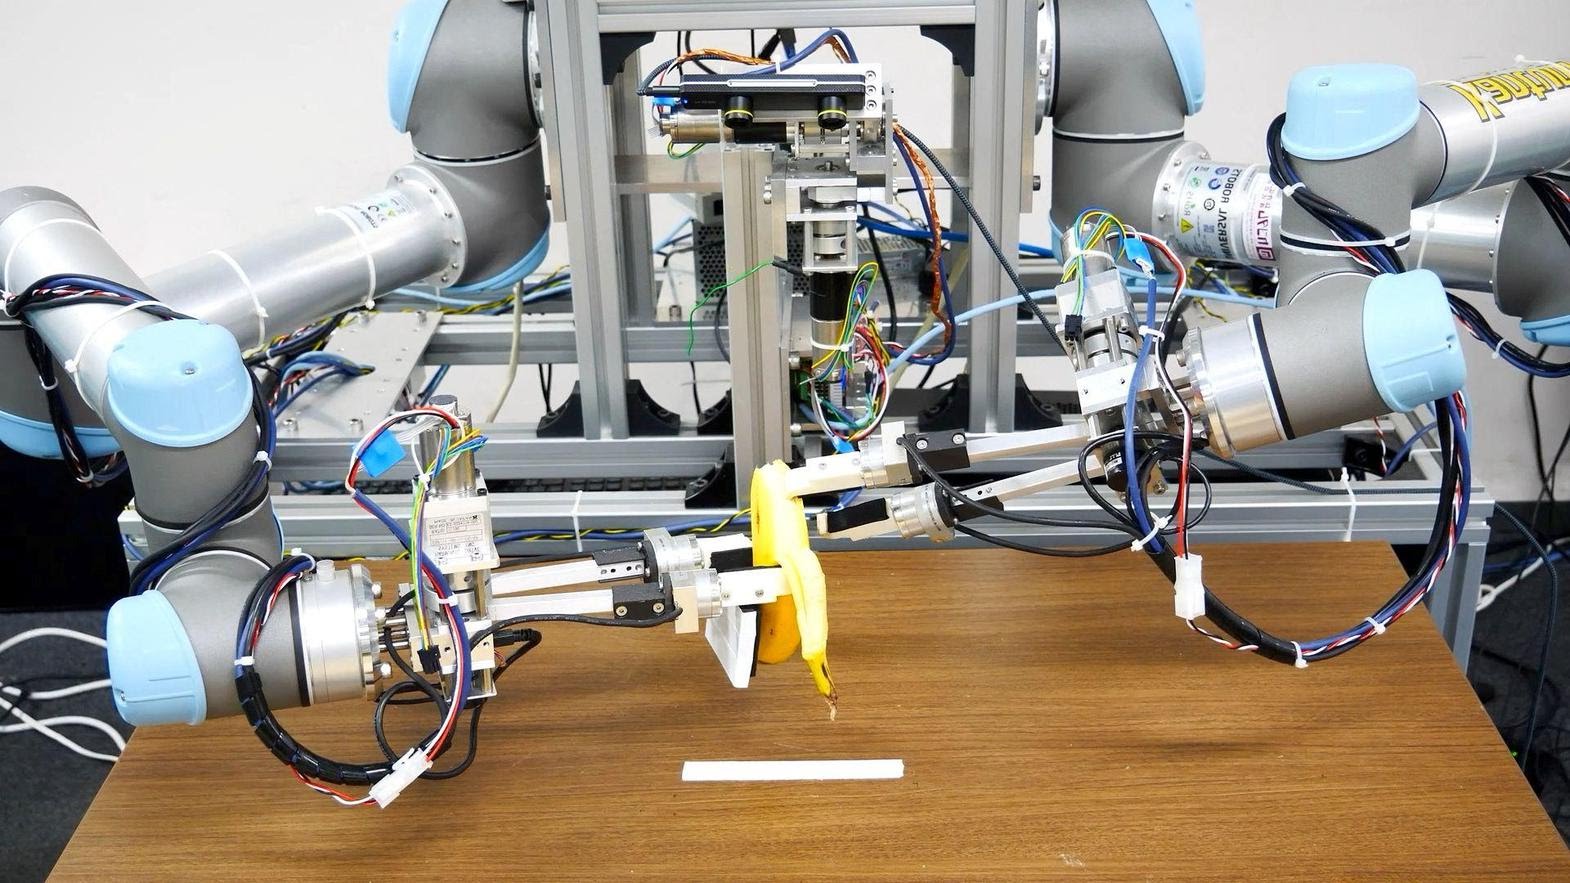 Robot Jepang Ini Bisa Mengupas Pisang Sampai Bersih Sepanjang Waktu